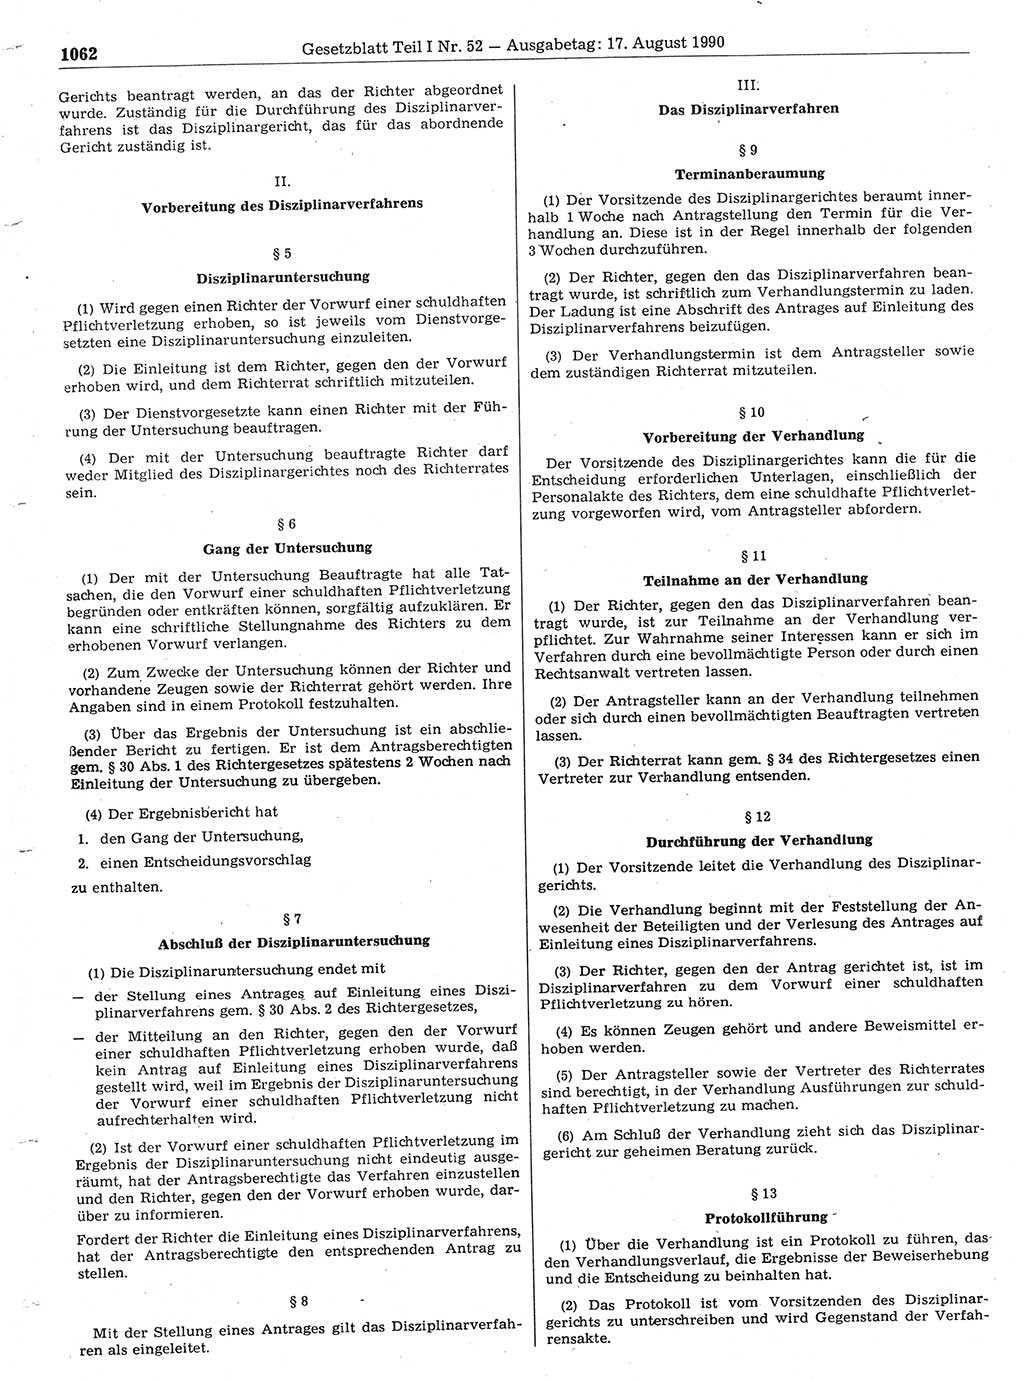 Gesetzblatt (GBl.) der Deutschen Demokratischen Republik (DDR) Teil Ⅰ 1990, Seite 1062 (GBl. DDR Ⅰ 1990, S. 1062)